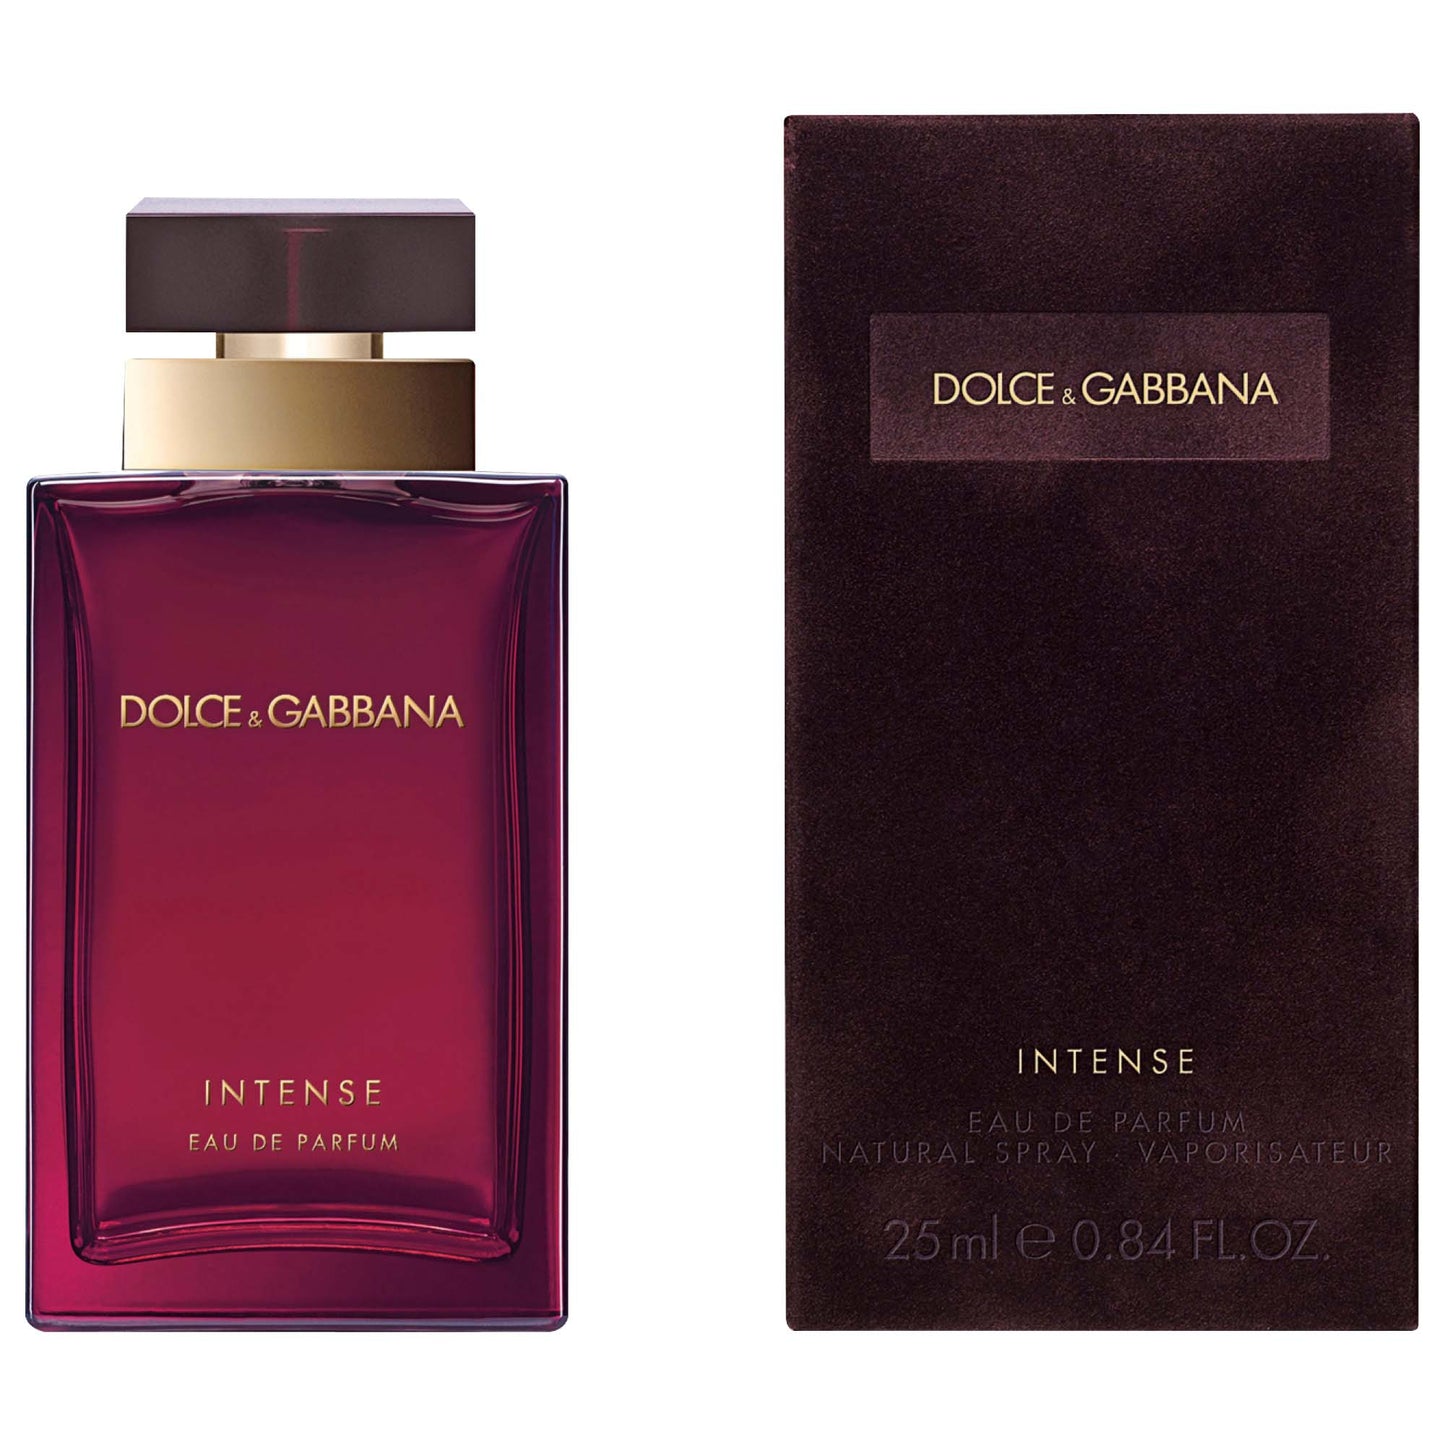 Dolce & Gabbana Femme Intense Eau De Parfum 25 ml